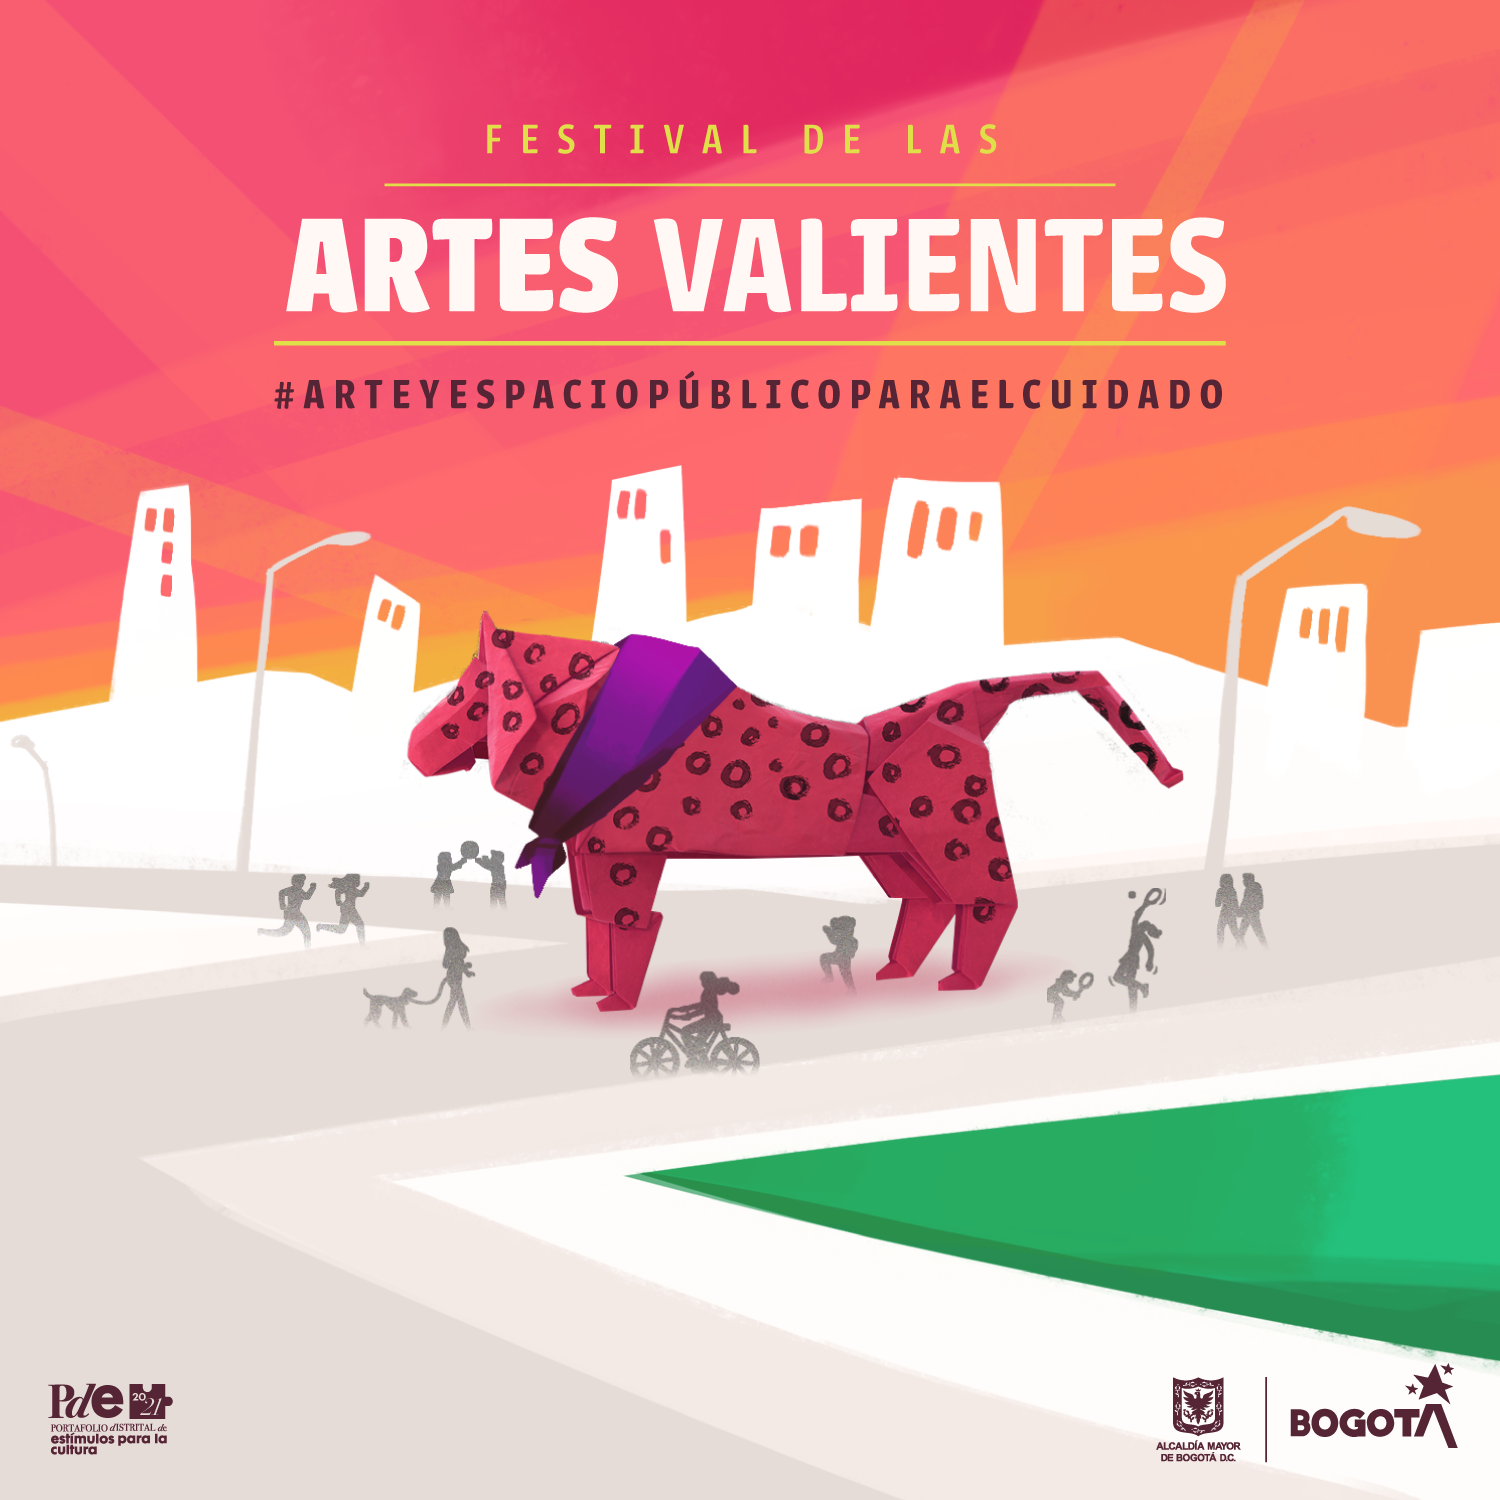 Festival de las Artes Valientes - Arte y Espacio Público para el Cuidado